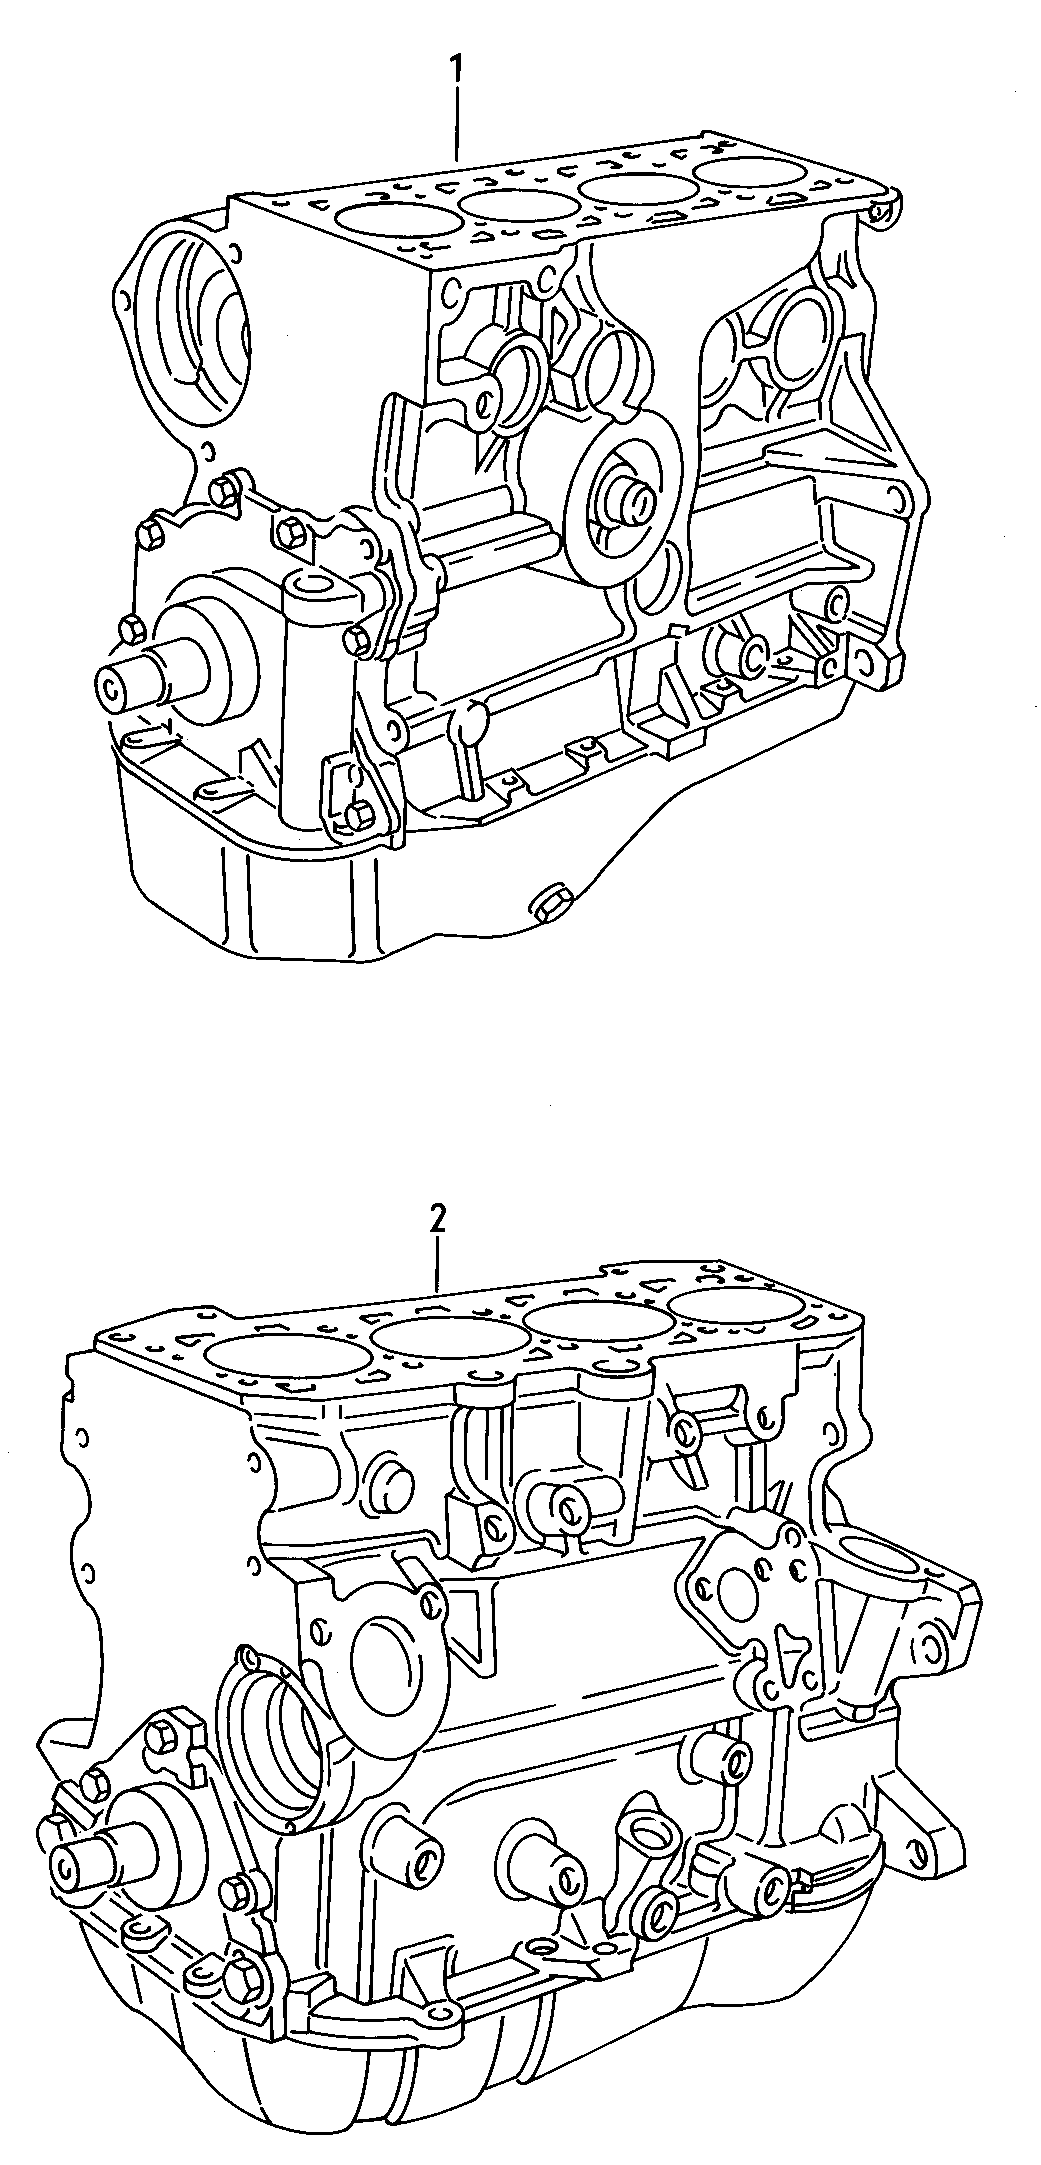 motor aligerado con ciguenal,
pistones,bomba y ca... - Audi 80/90/Avant(A80)  